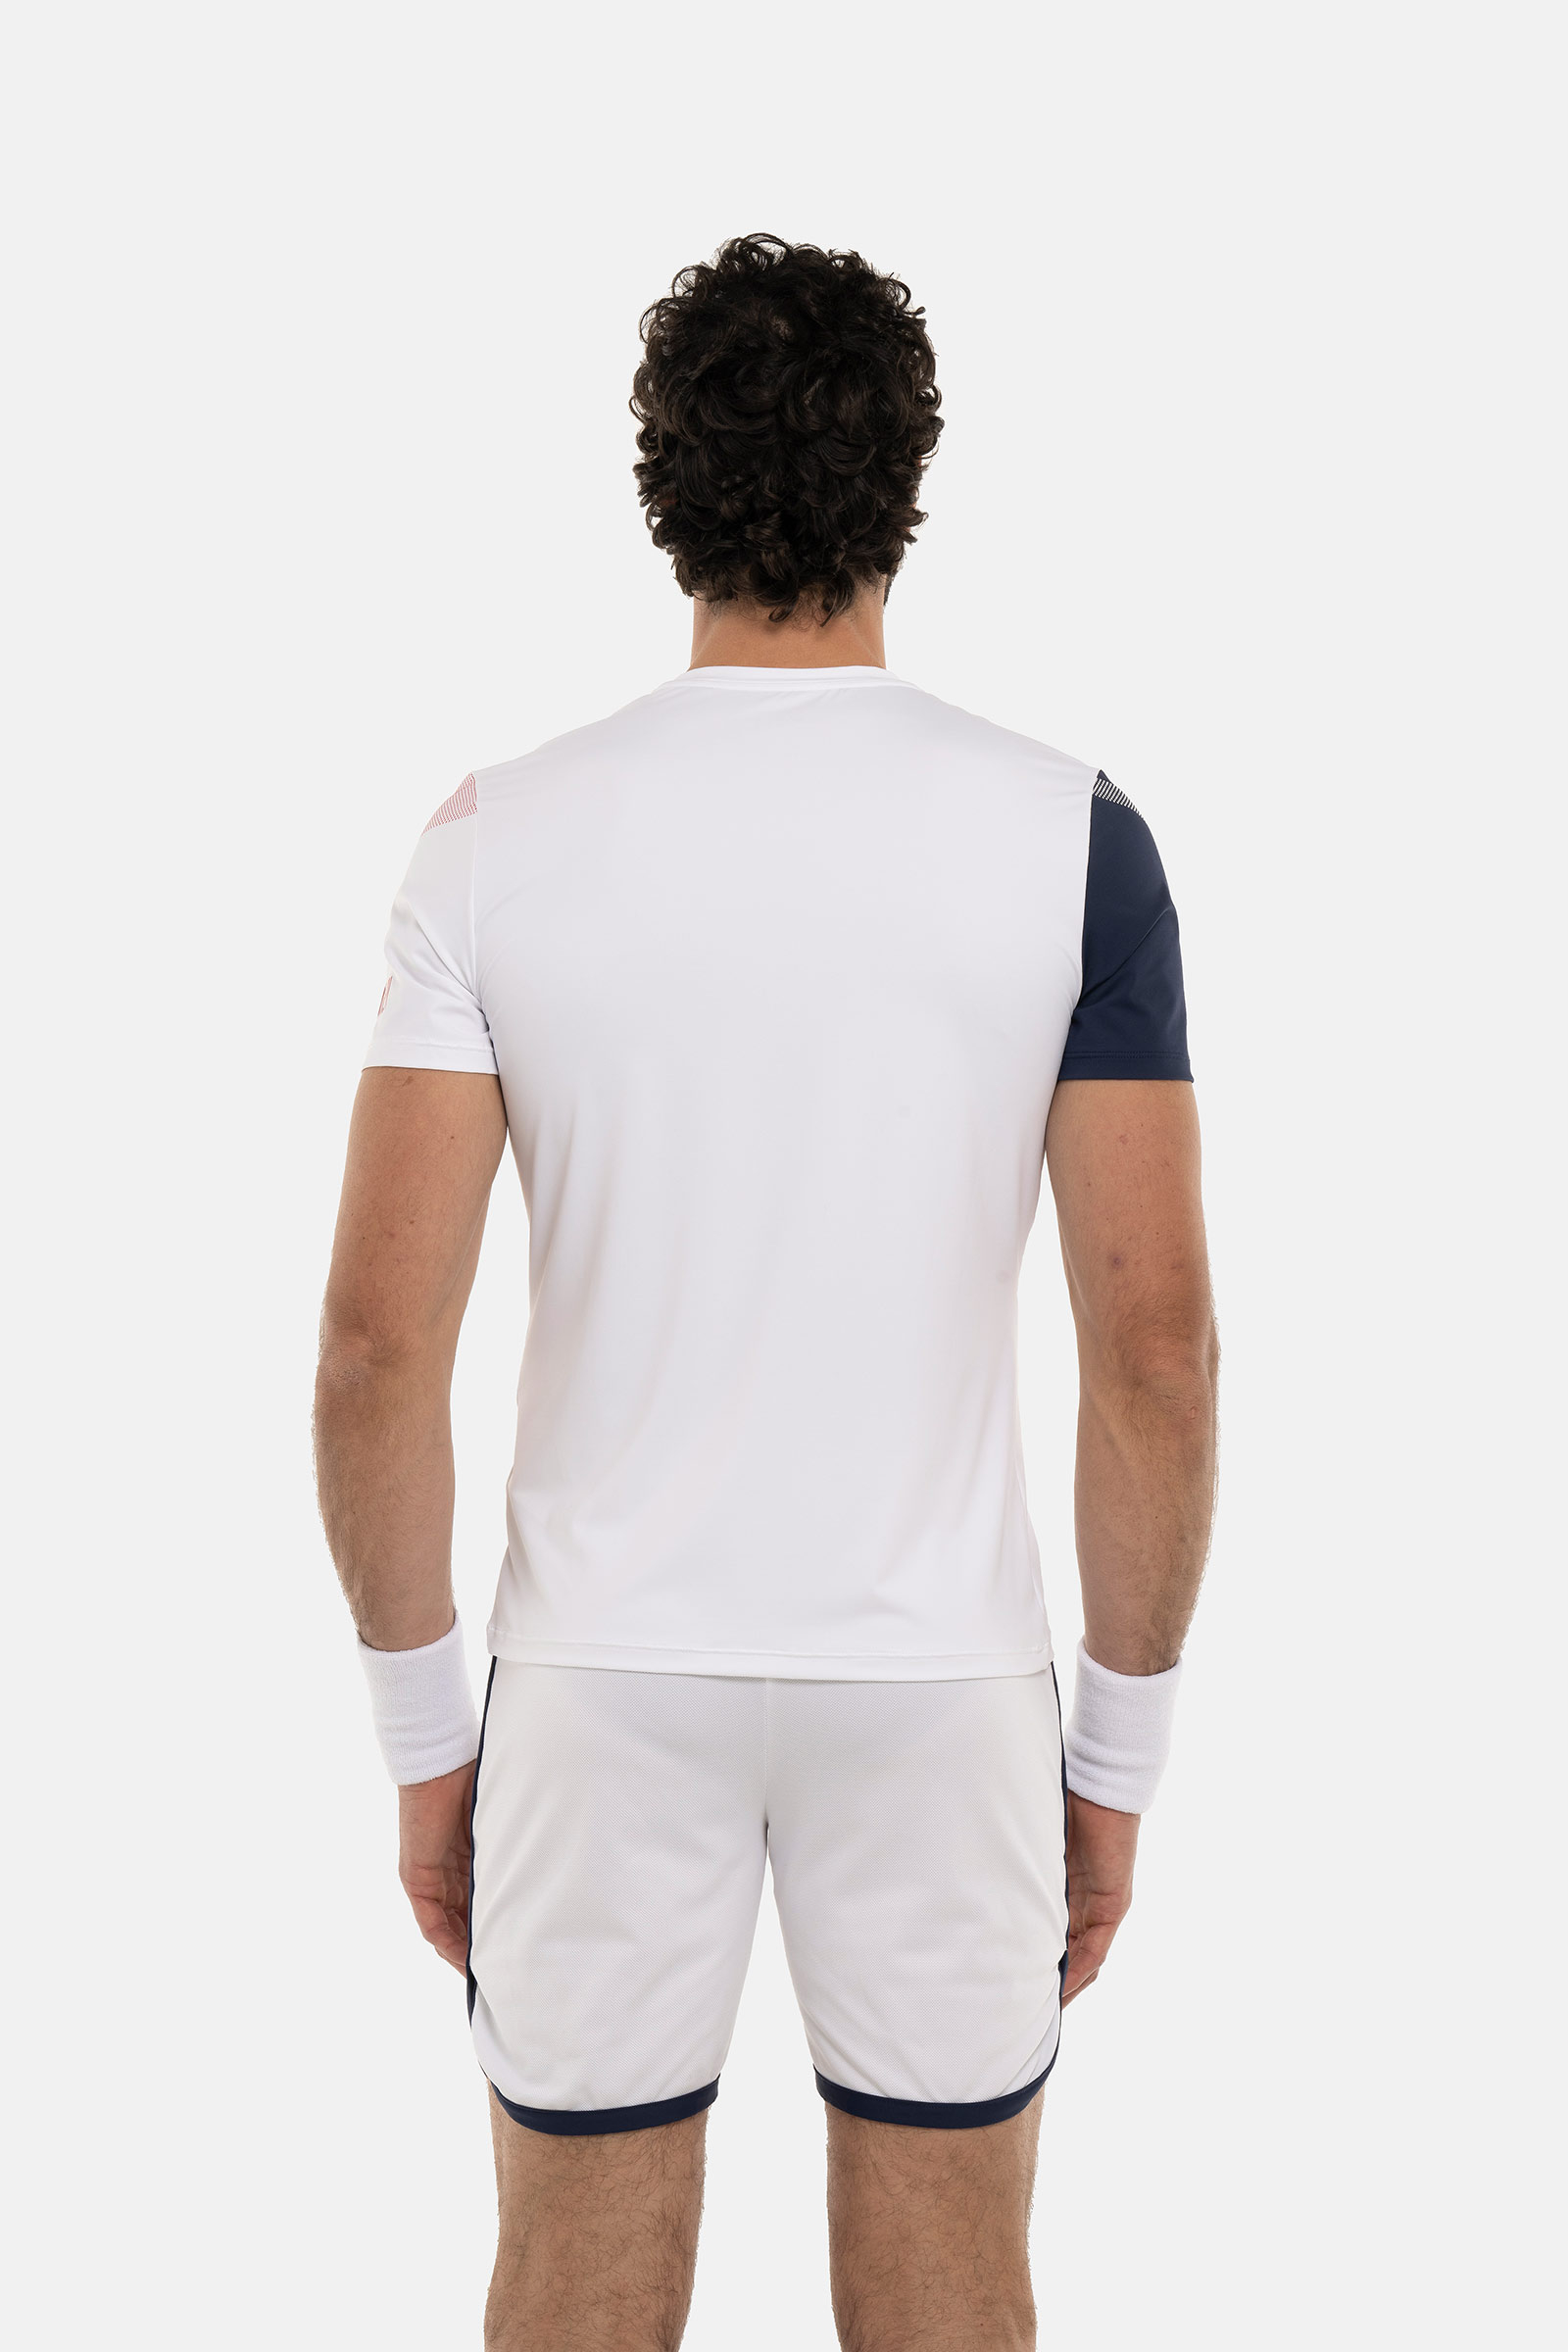 SPORT STRIPES TECH T-SHIRT - WHITE - Hydrogen - Luxury Sportwear